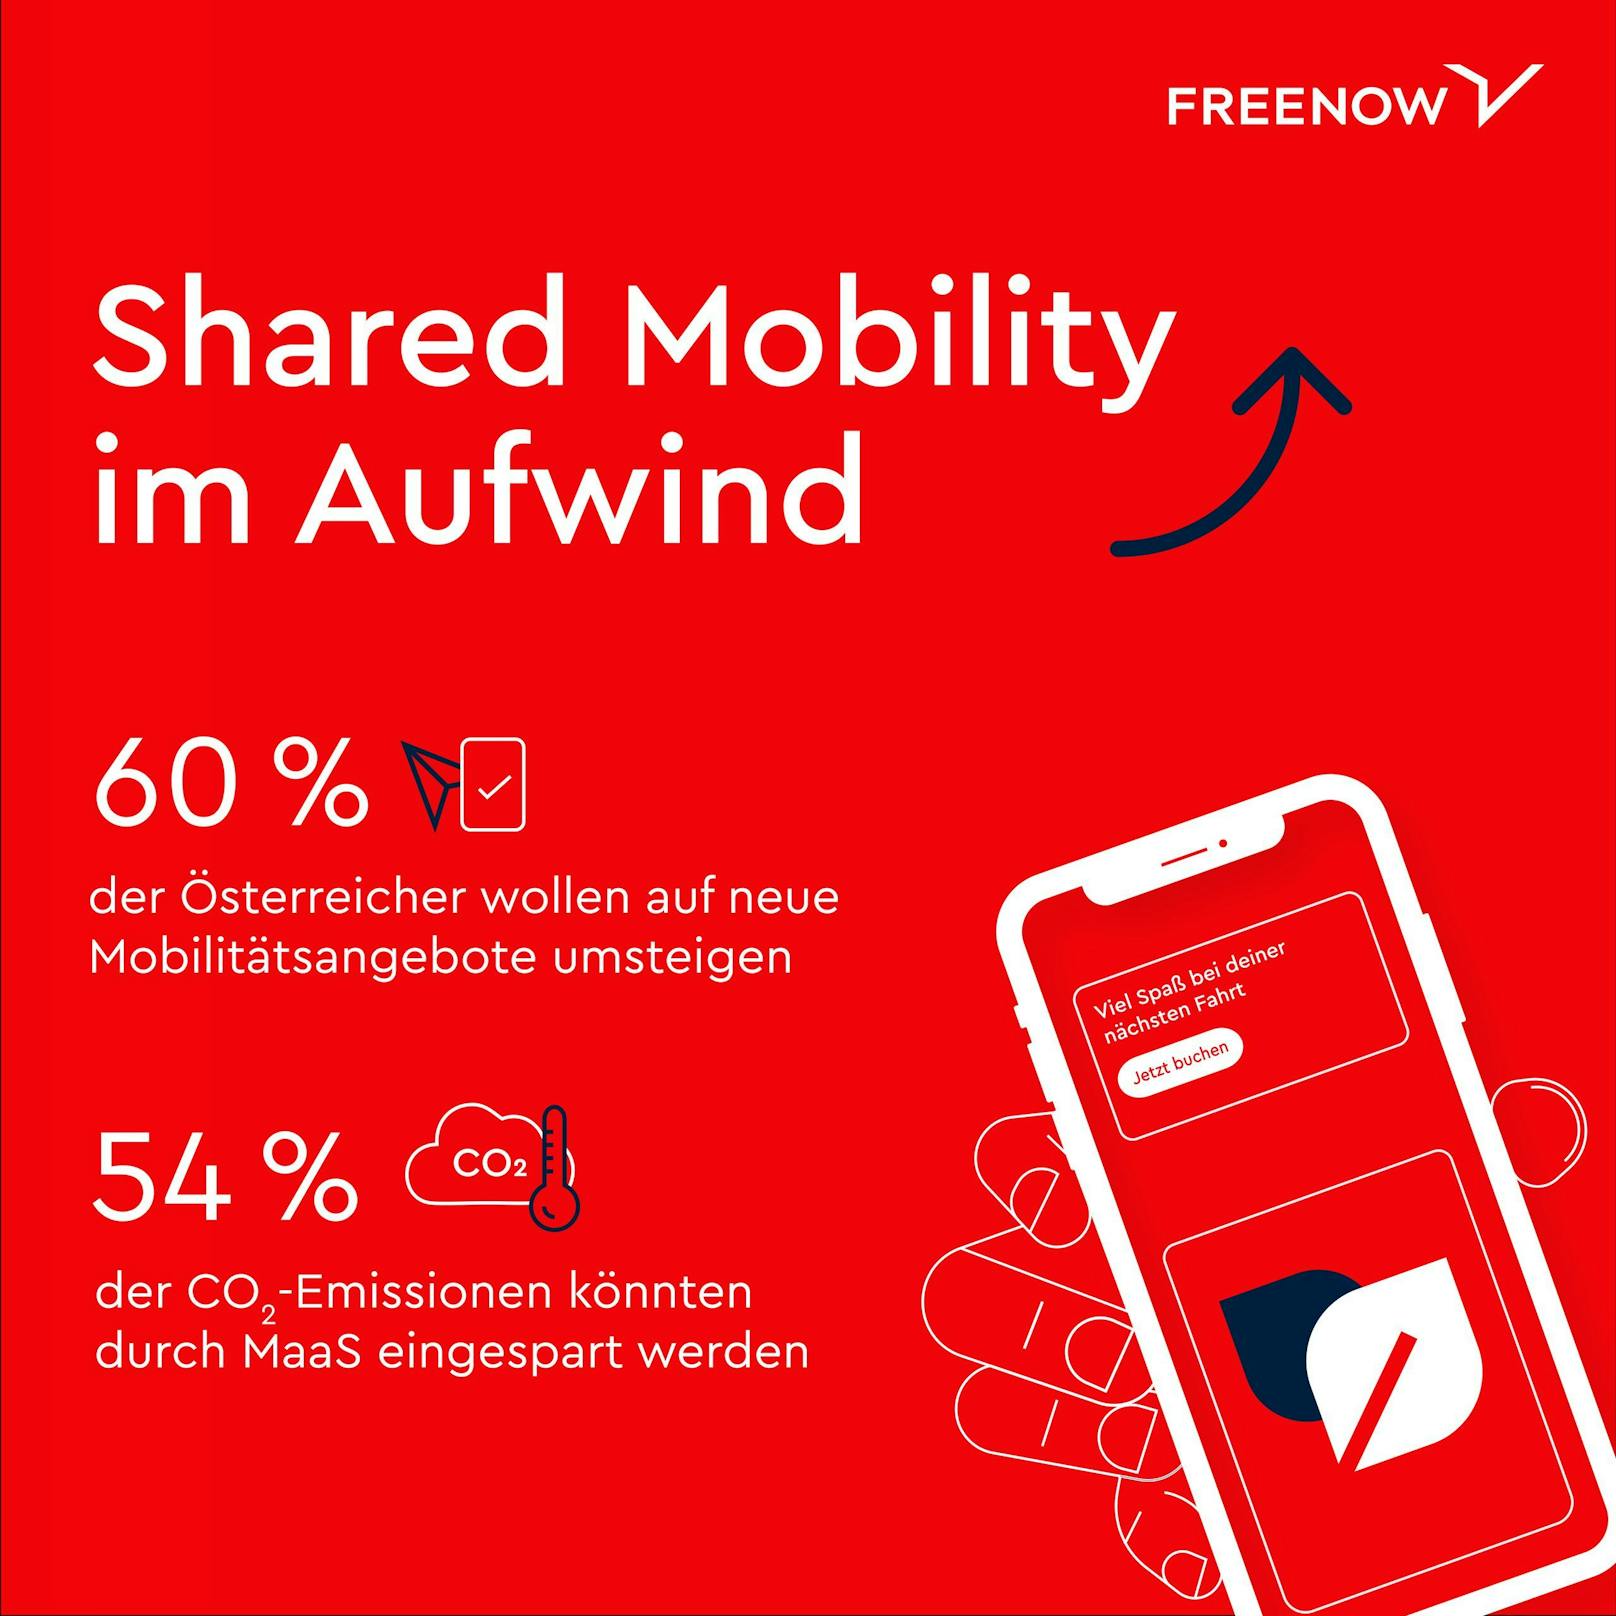 Free Now Studie zeigt: Immer mehr junge Österreicherinnen und Österreicher setzen auf Shared Mobility.